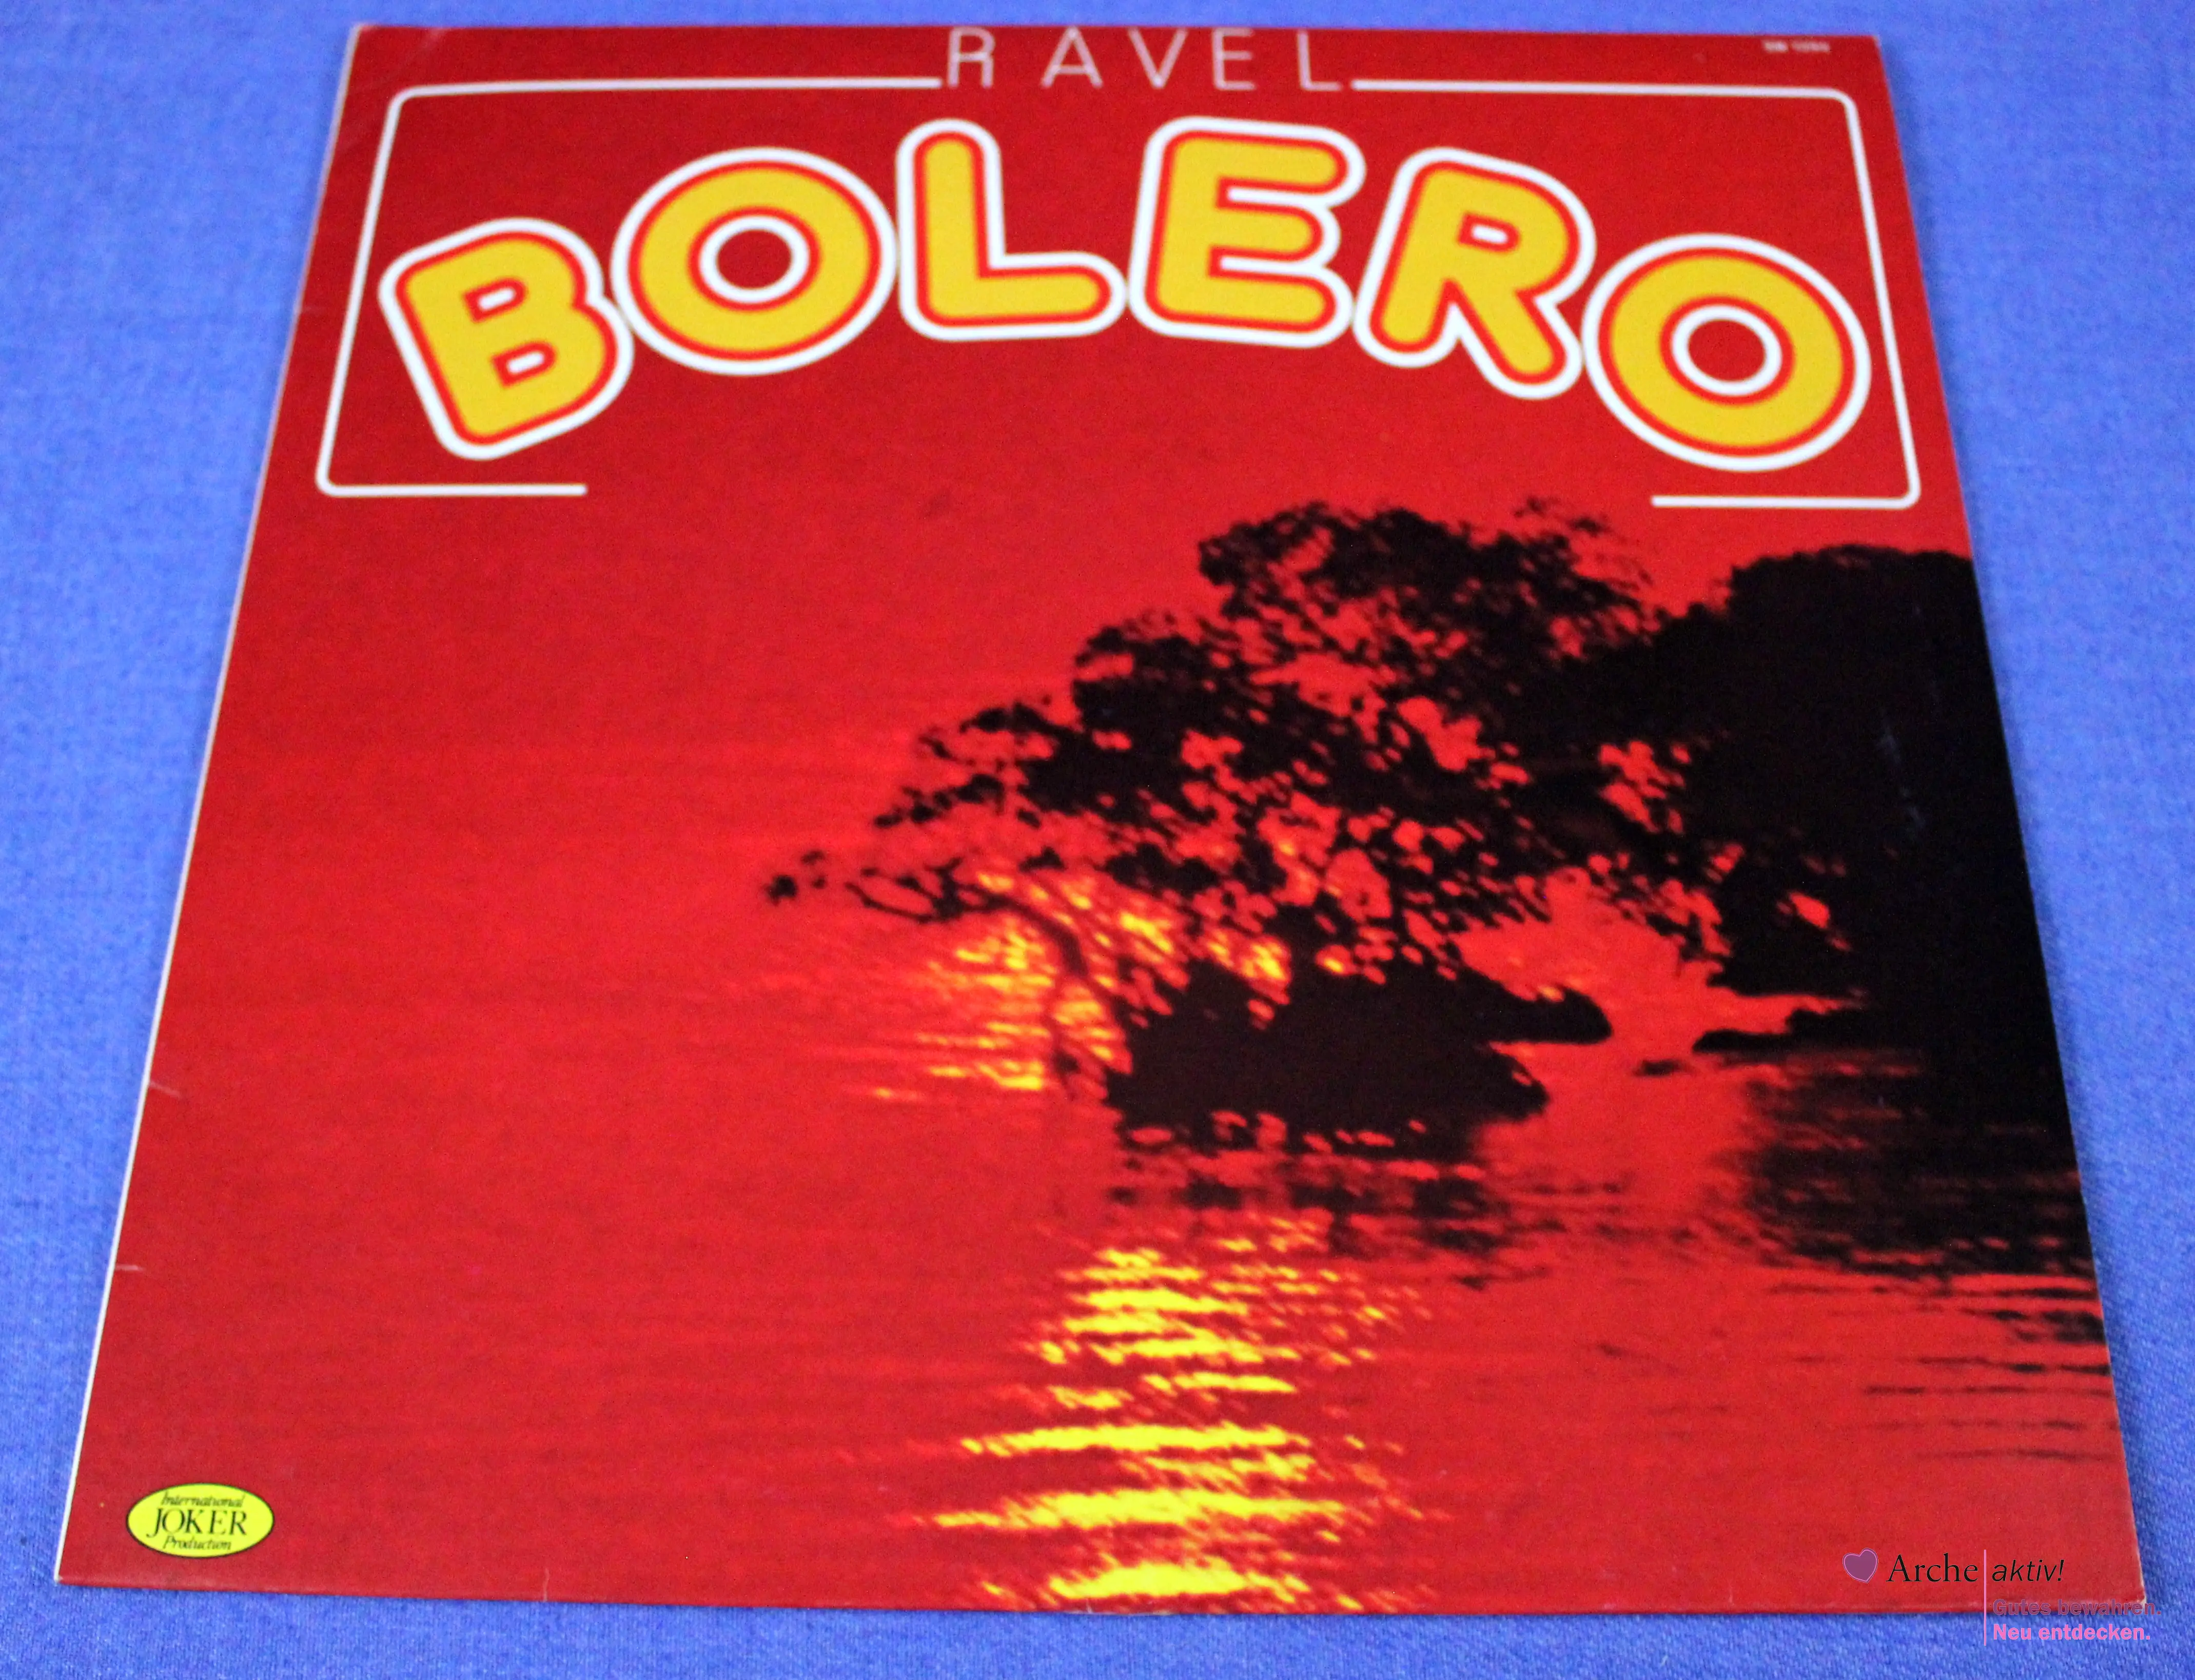 Ravel - Bolero - Orchester der Wiener Volksoper (Vinyl) LP, gebraucht